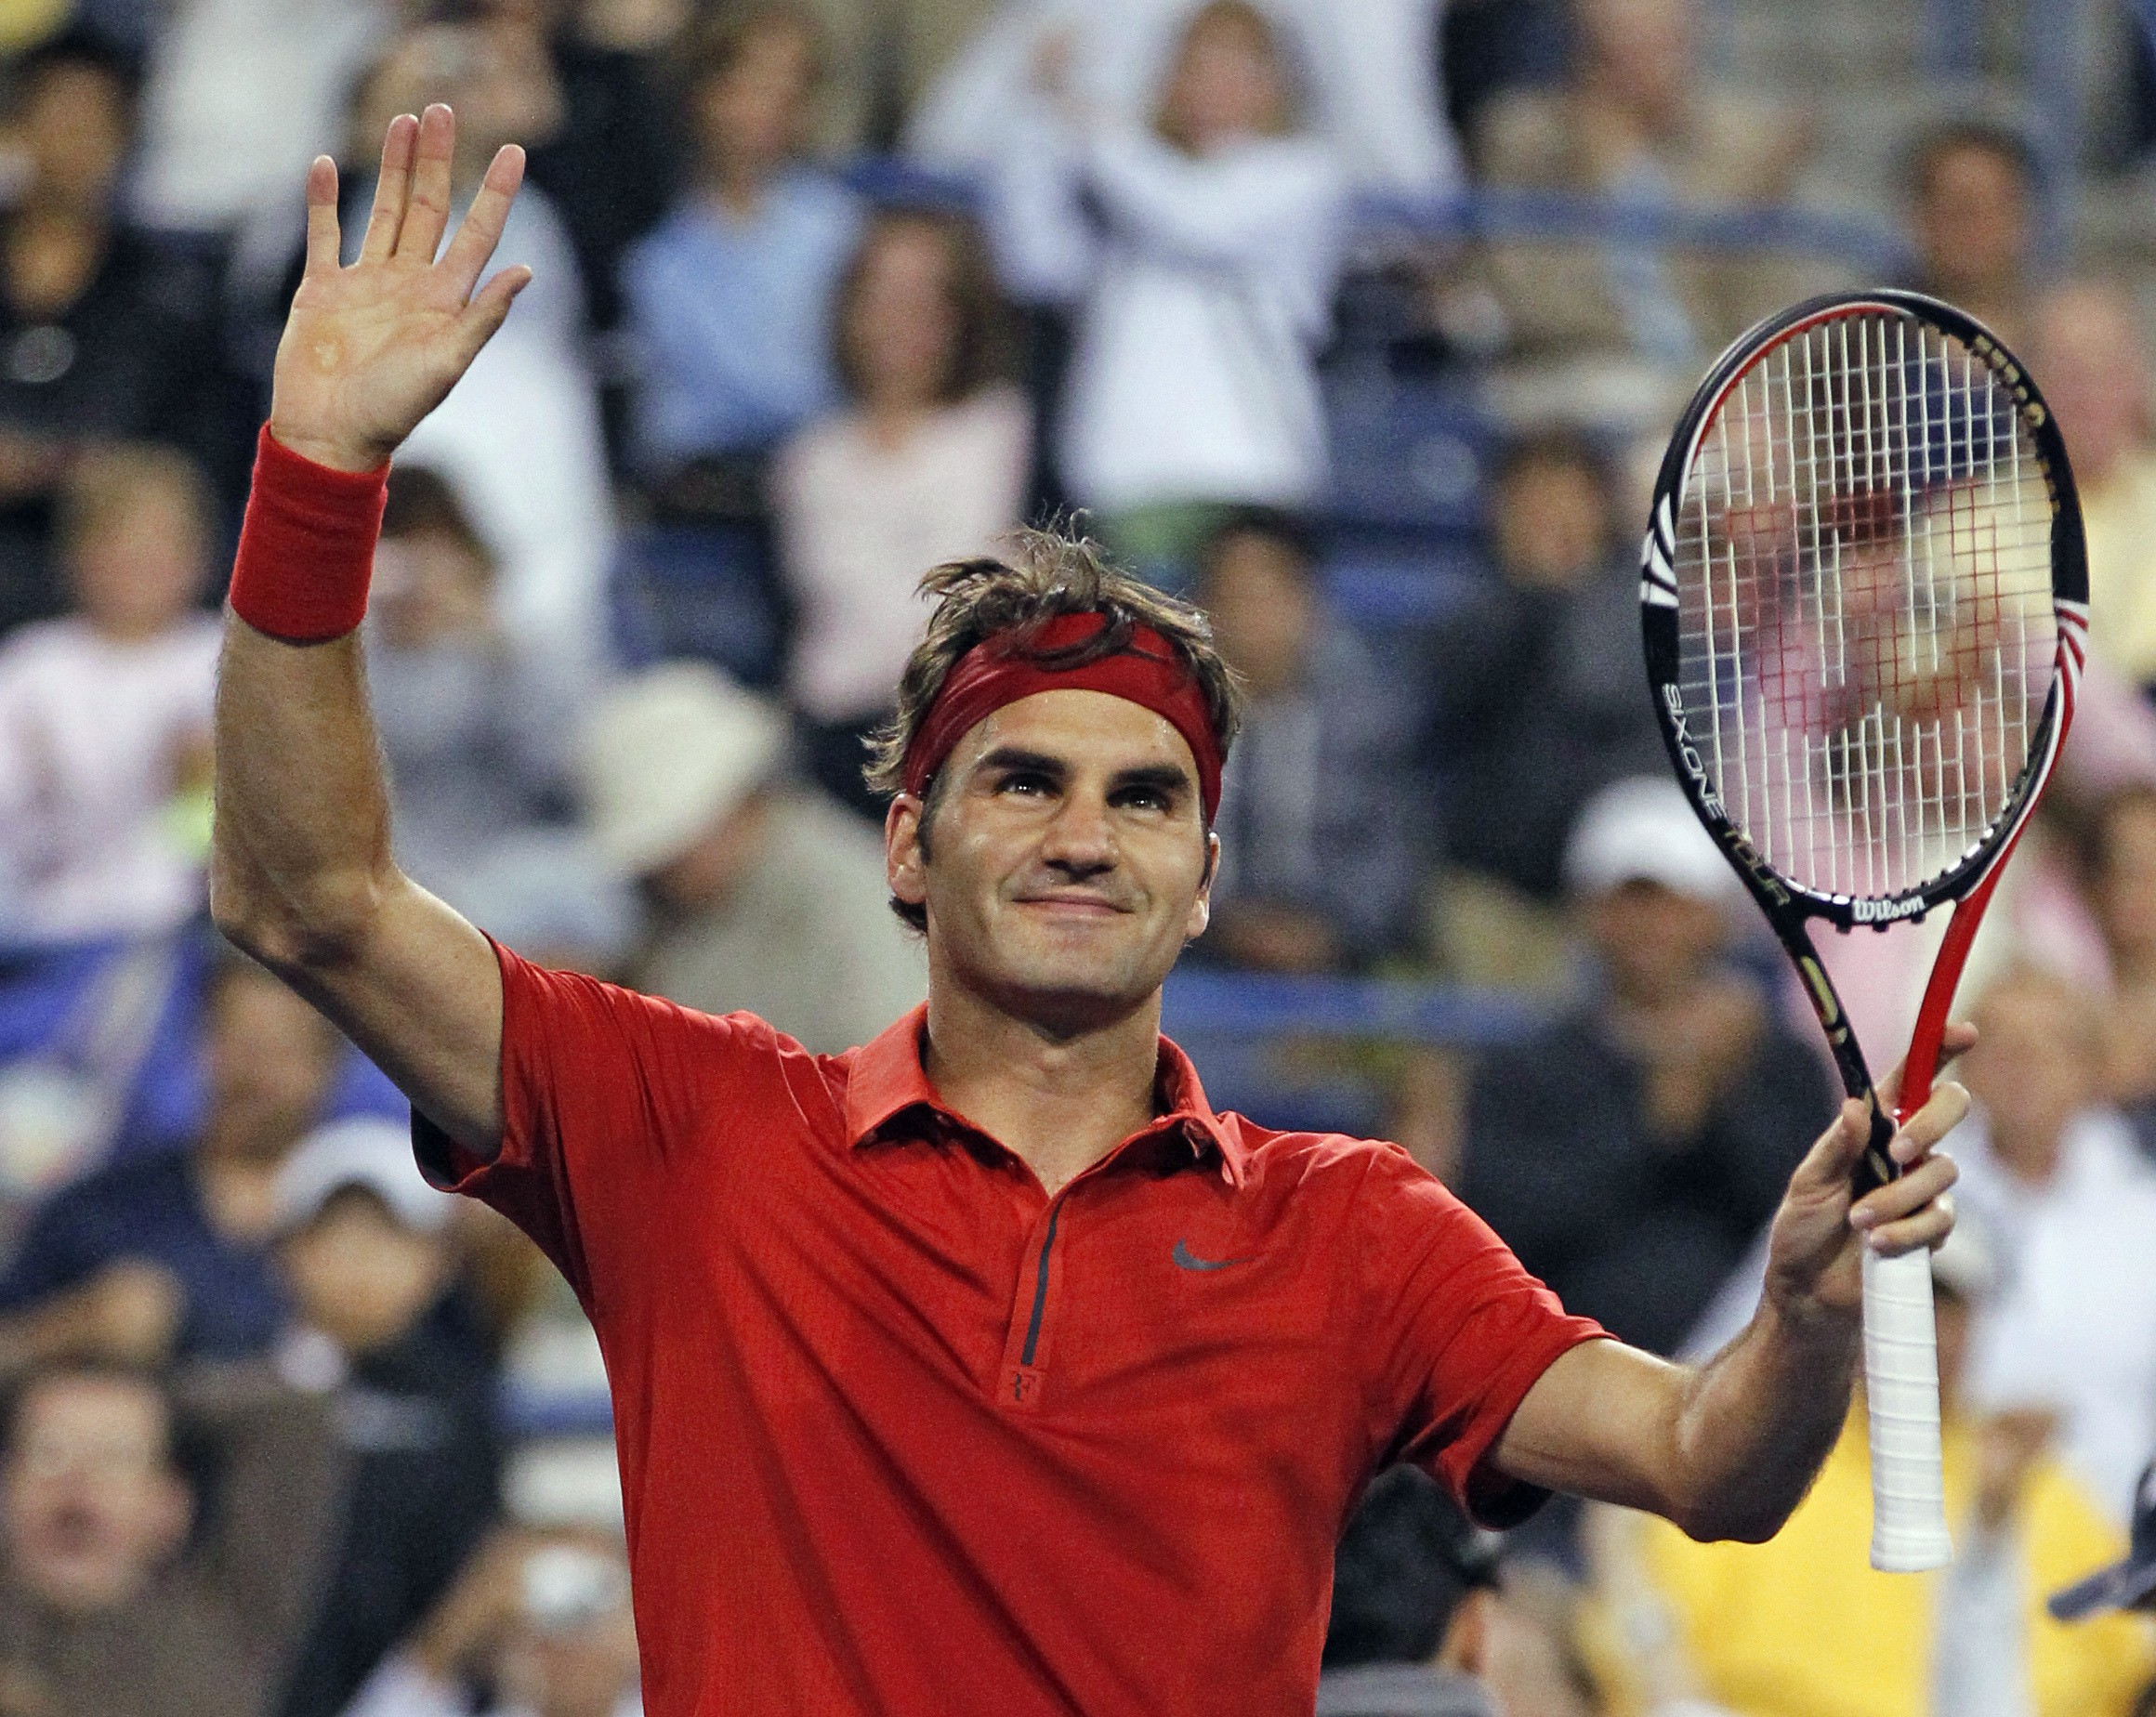 Tennis, Roger Federer, David Nalbandian